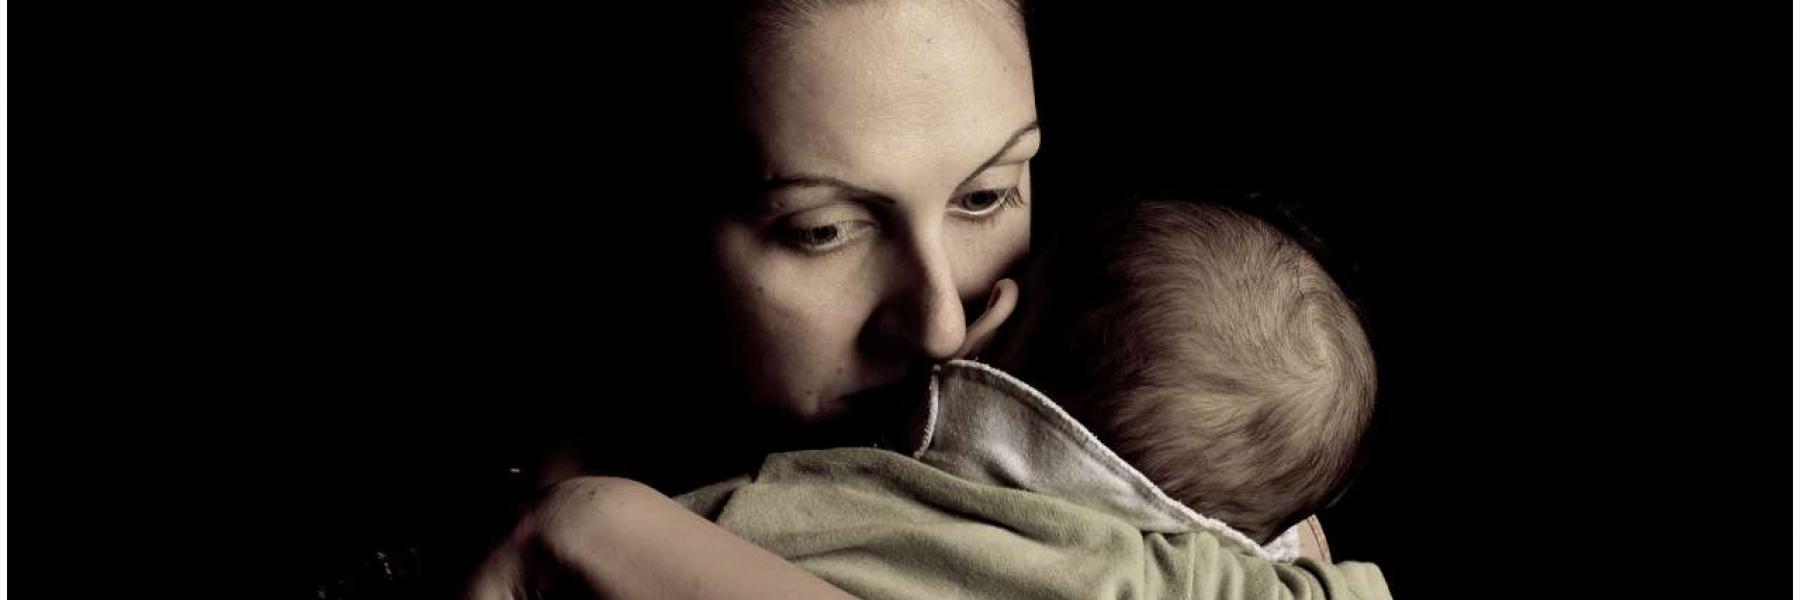 ما الذي يسبب اكتئاب ما بعد الولادة؟